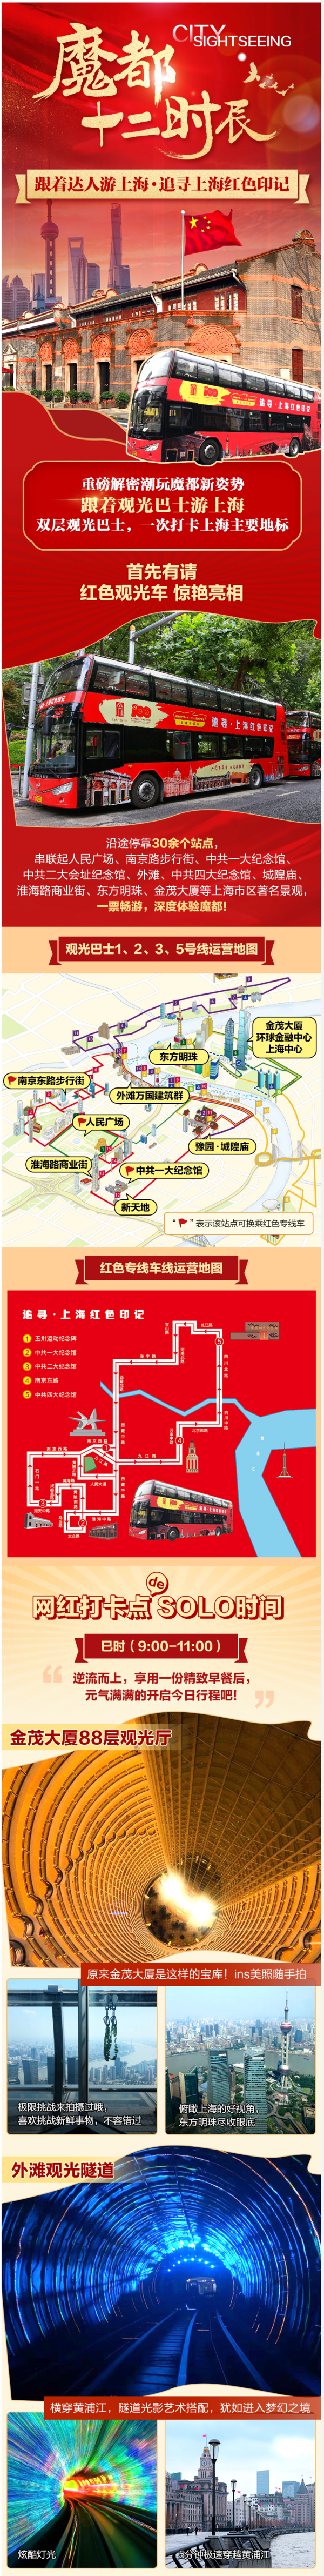 上海双层观光巴士1日票 成人票1张